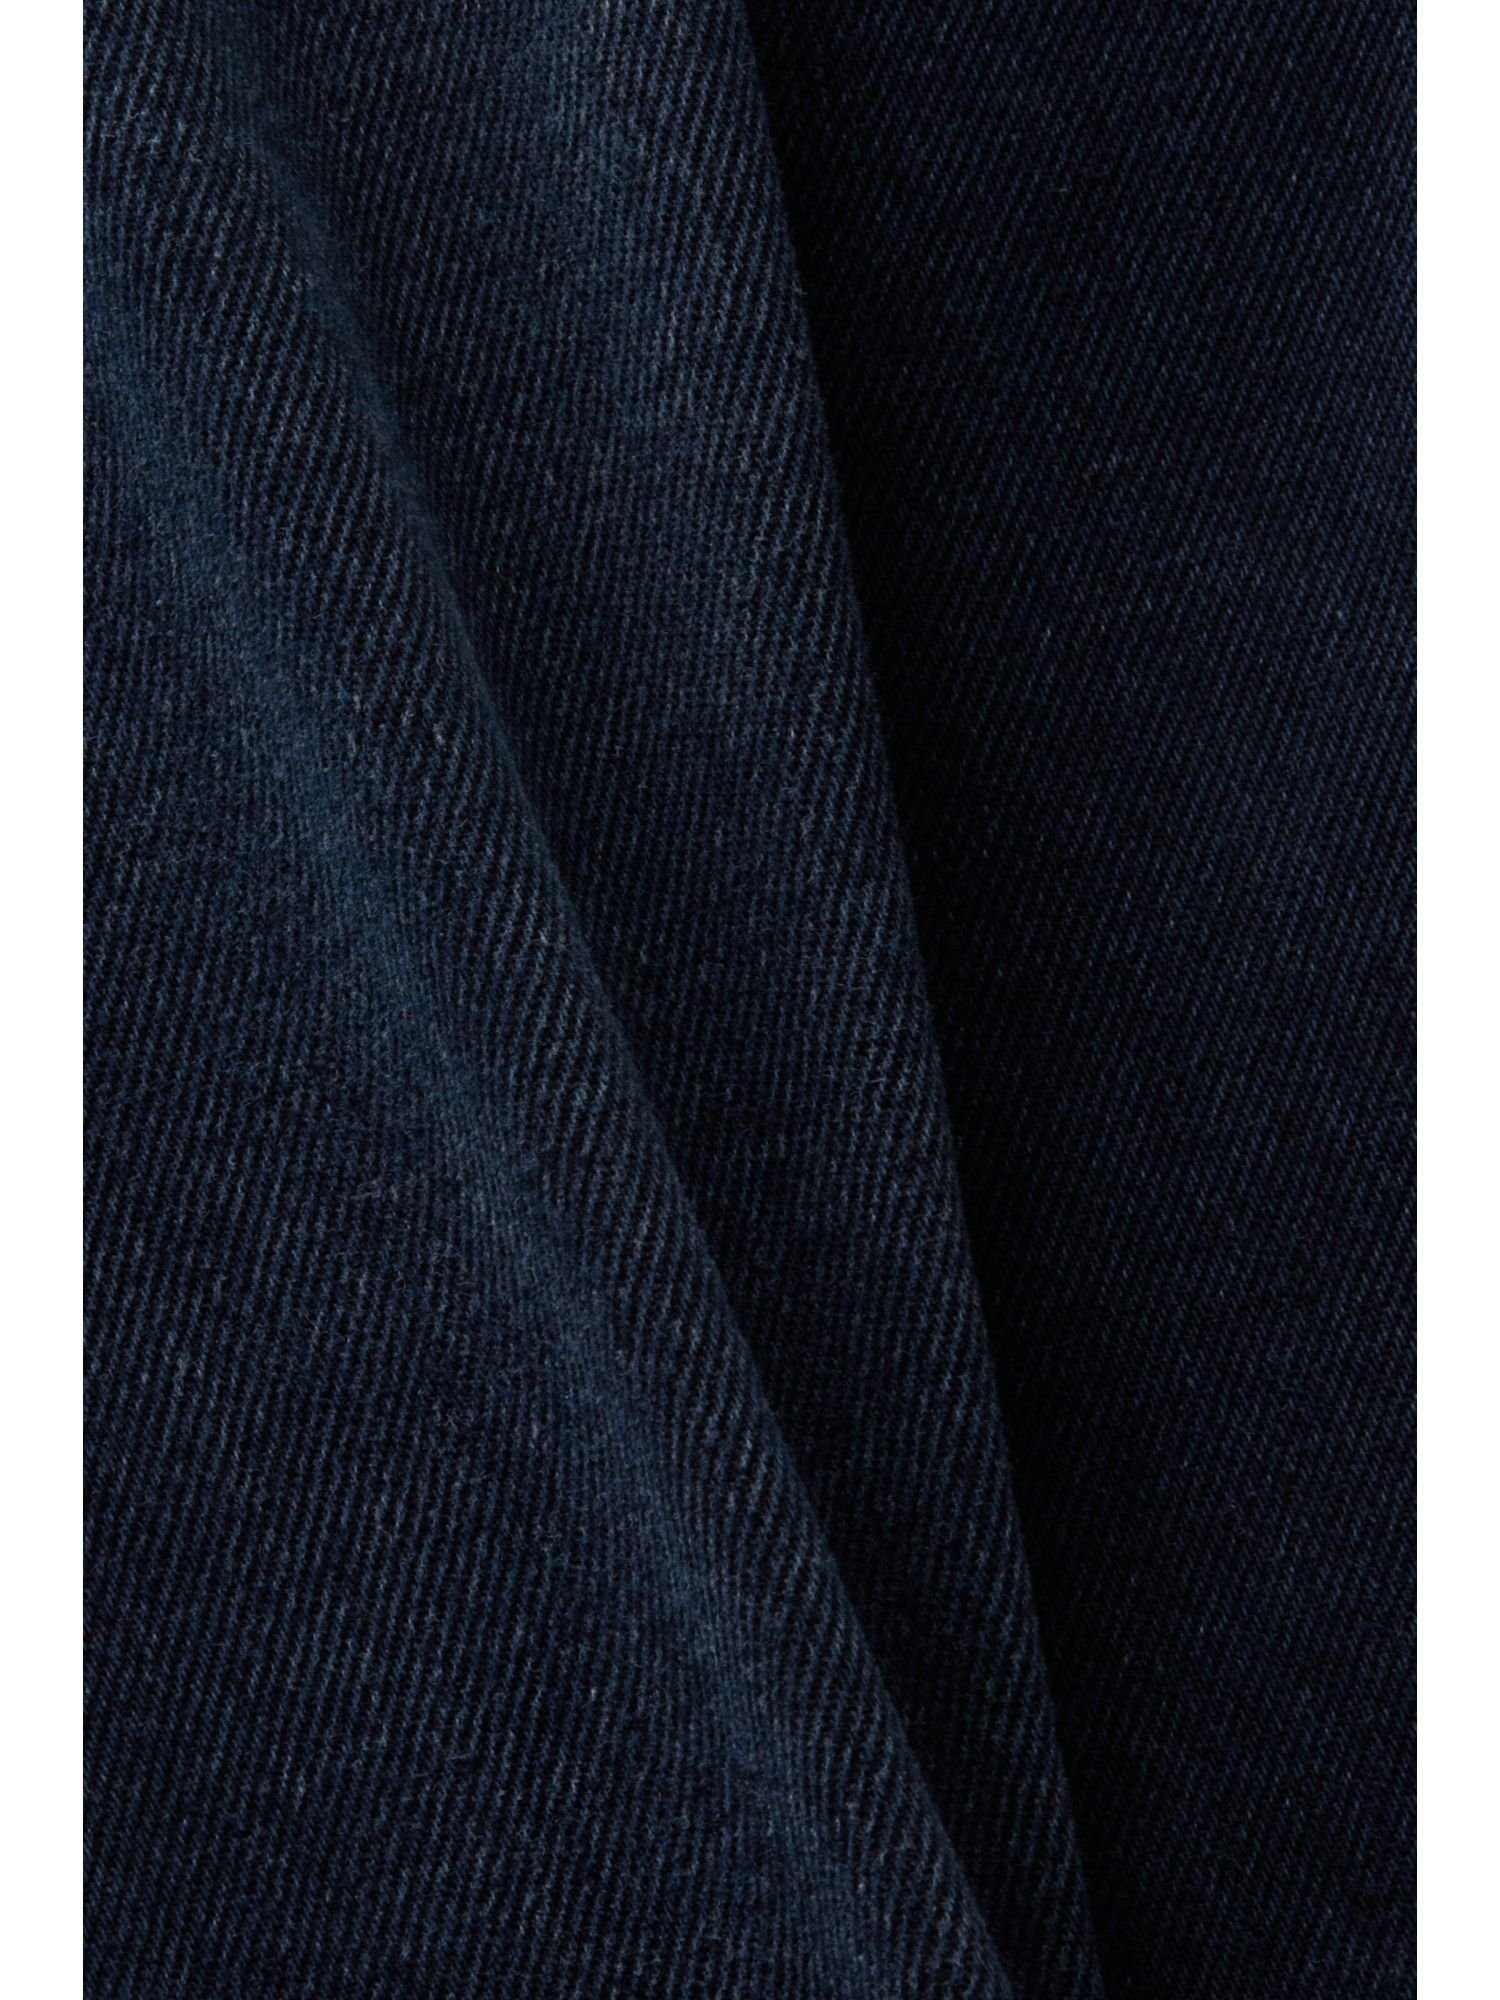 mittelhohem Bund Straight-Jeans gerader Jeans mit Passform und Esprit